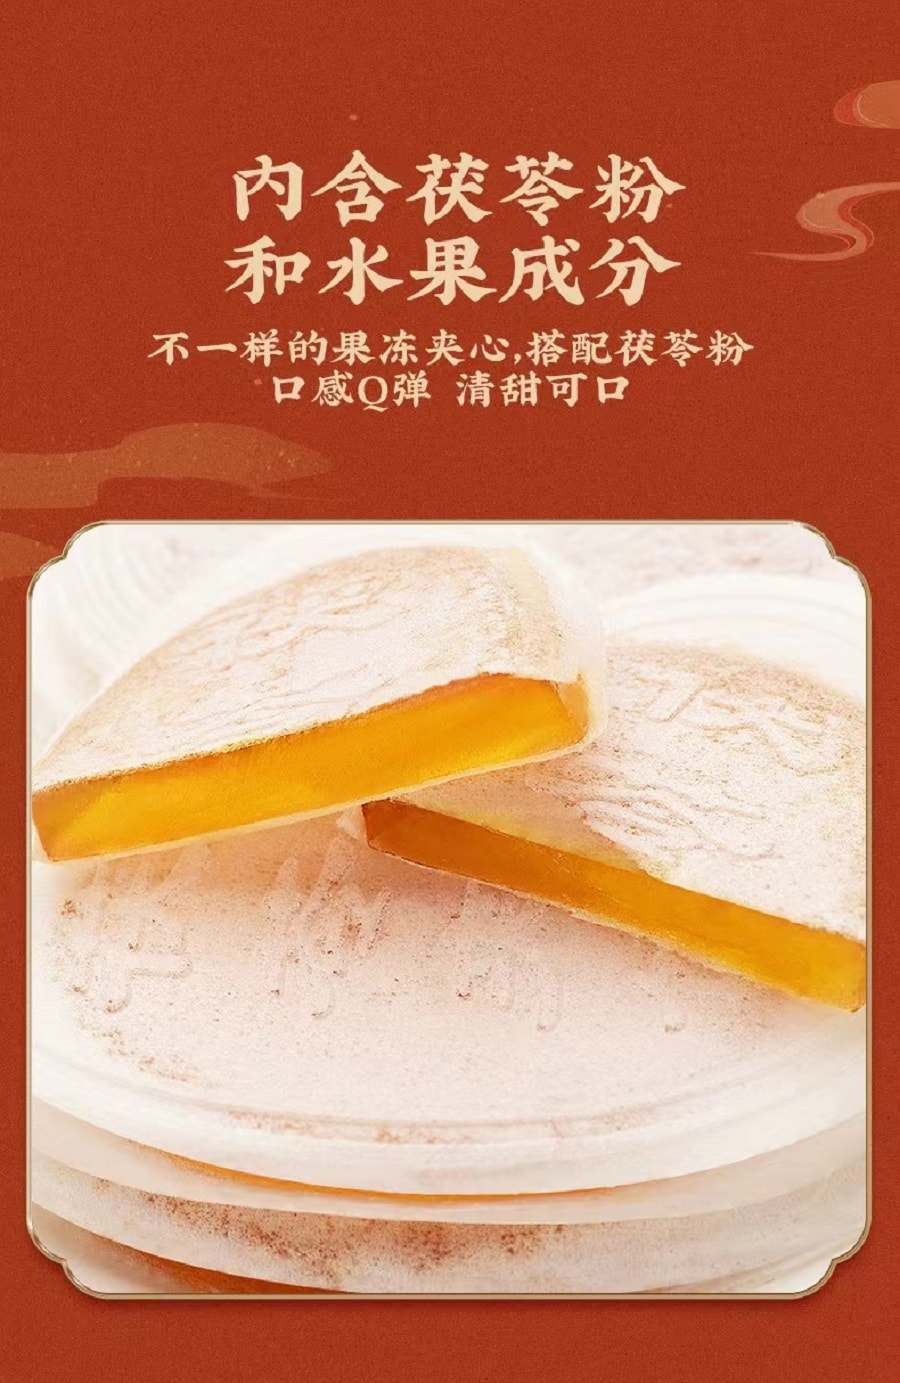 禦食園老北京風味茯苓夾餅六種口味混合裝120克 (促銷)